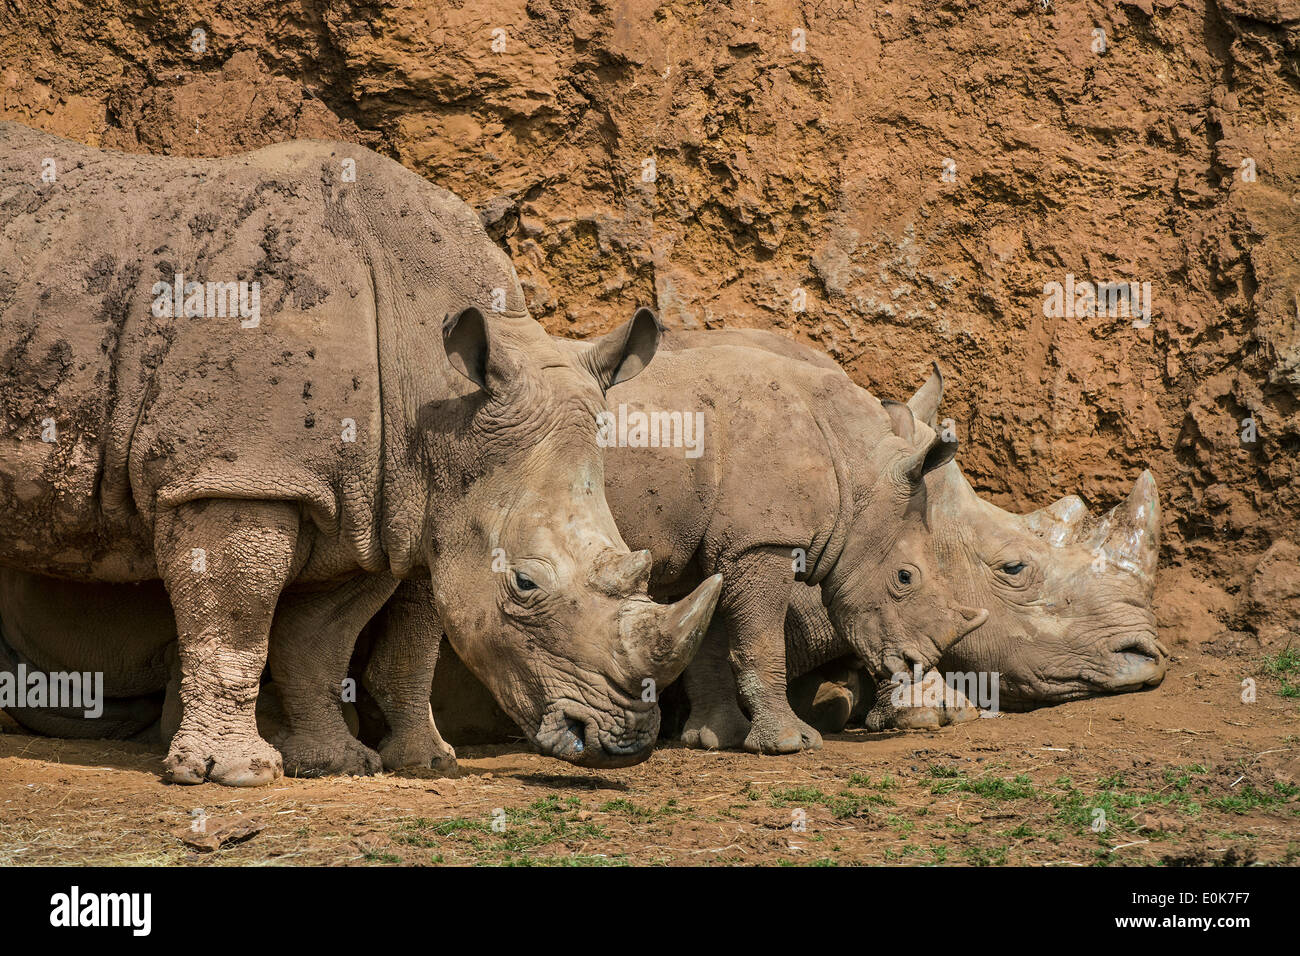 Le rhinocéros blanc d'Afrique / Square-lipped rhinoceros (Ceratotherium simum) Groupe de famille montrant des hommes, des femmes et de repos de veau Banque D'Images